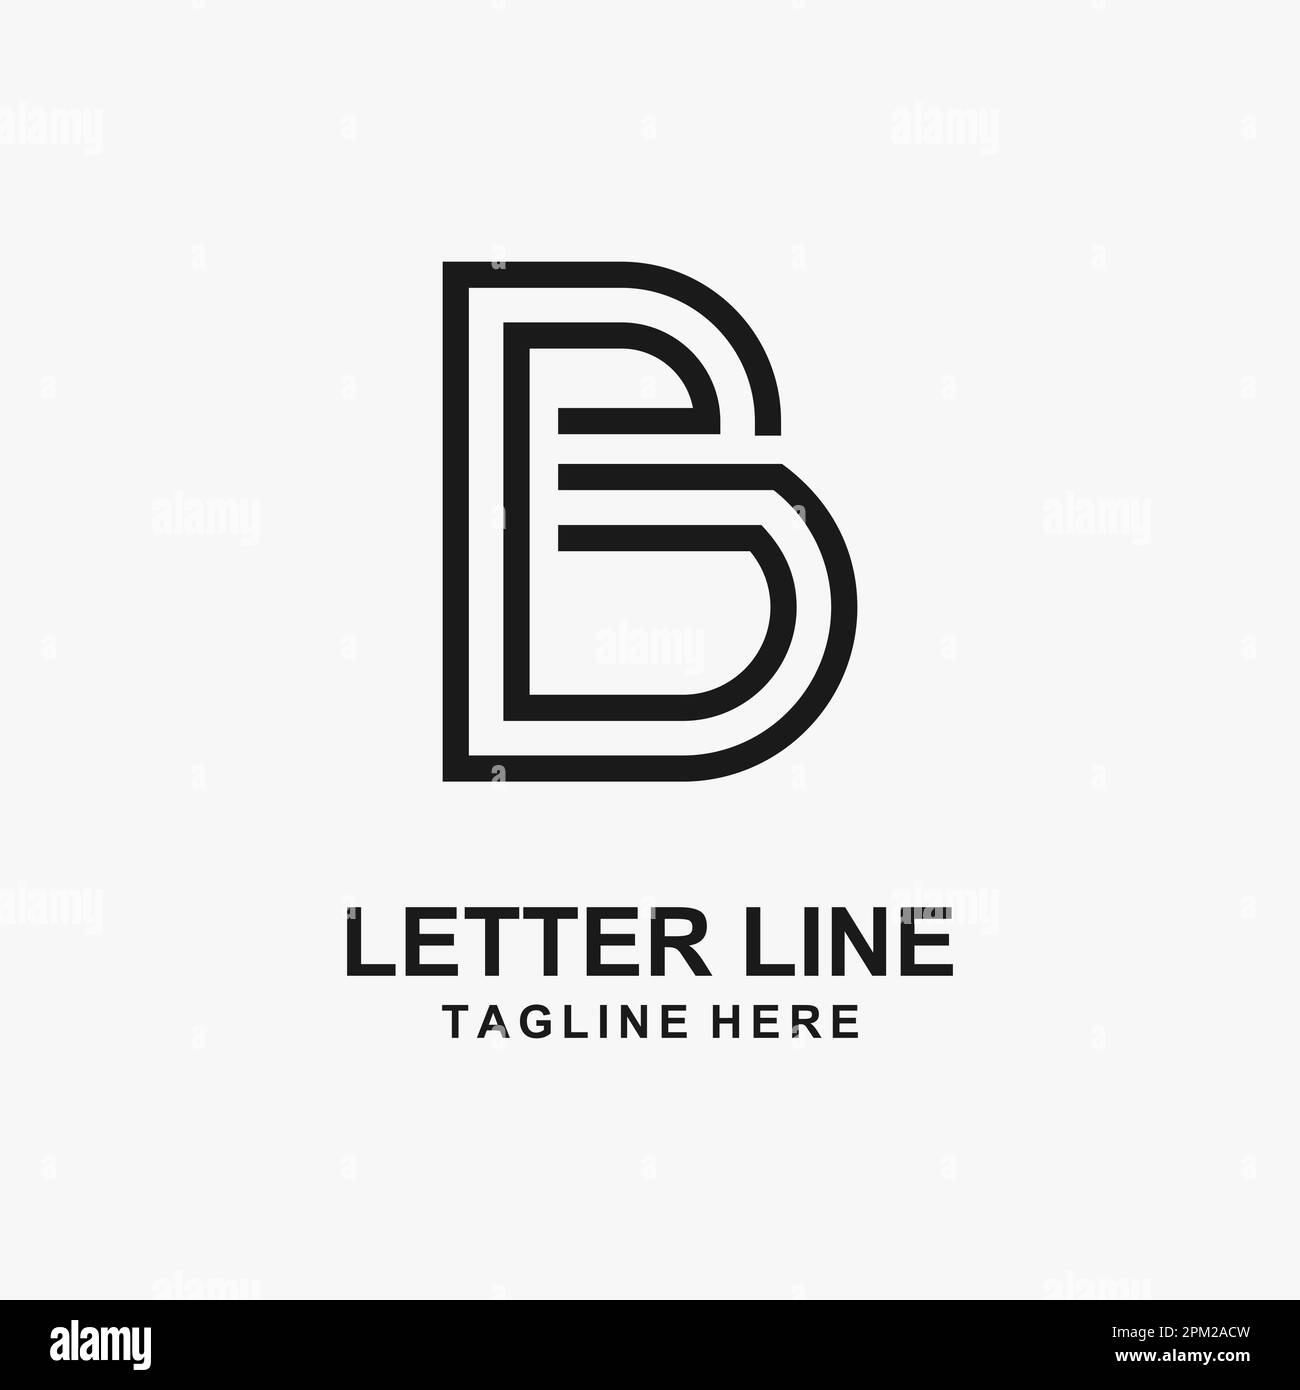 Letter B line logo design Stock Vector